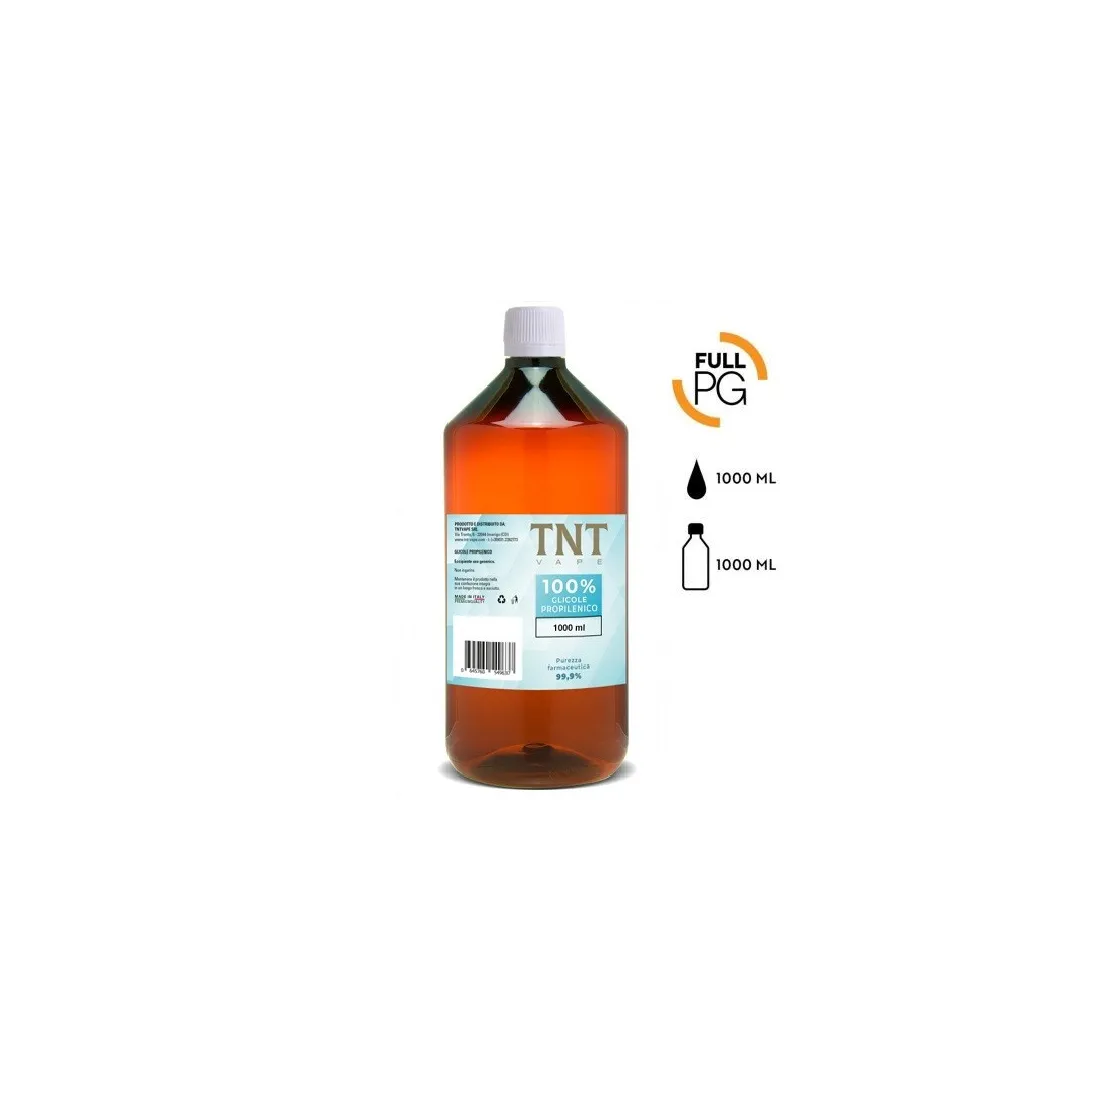 Glicole Propilenico TNT Vape PG 500ml